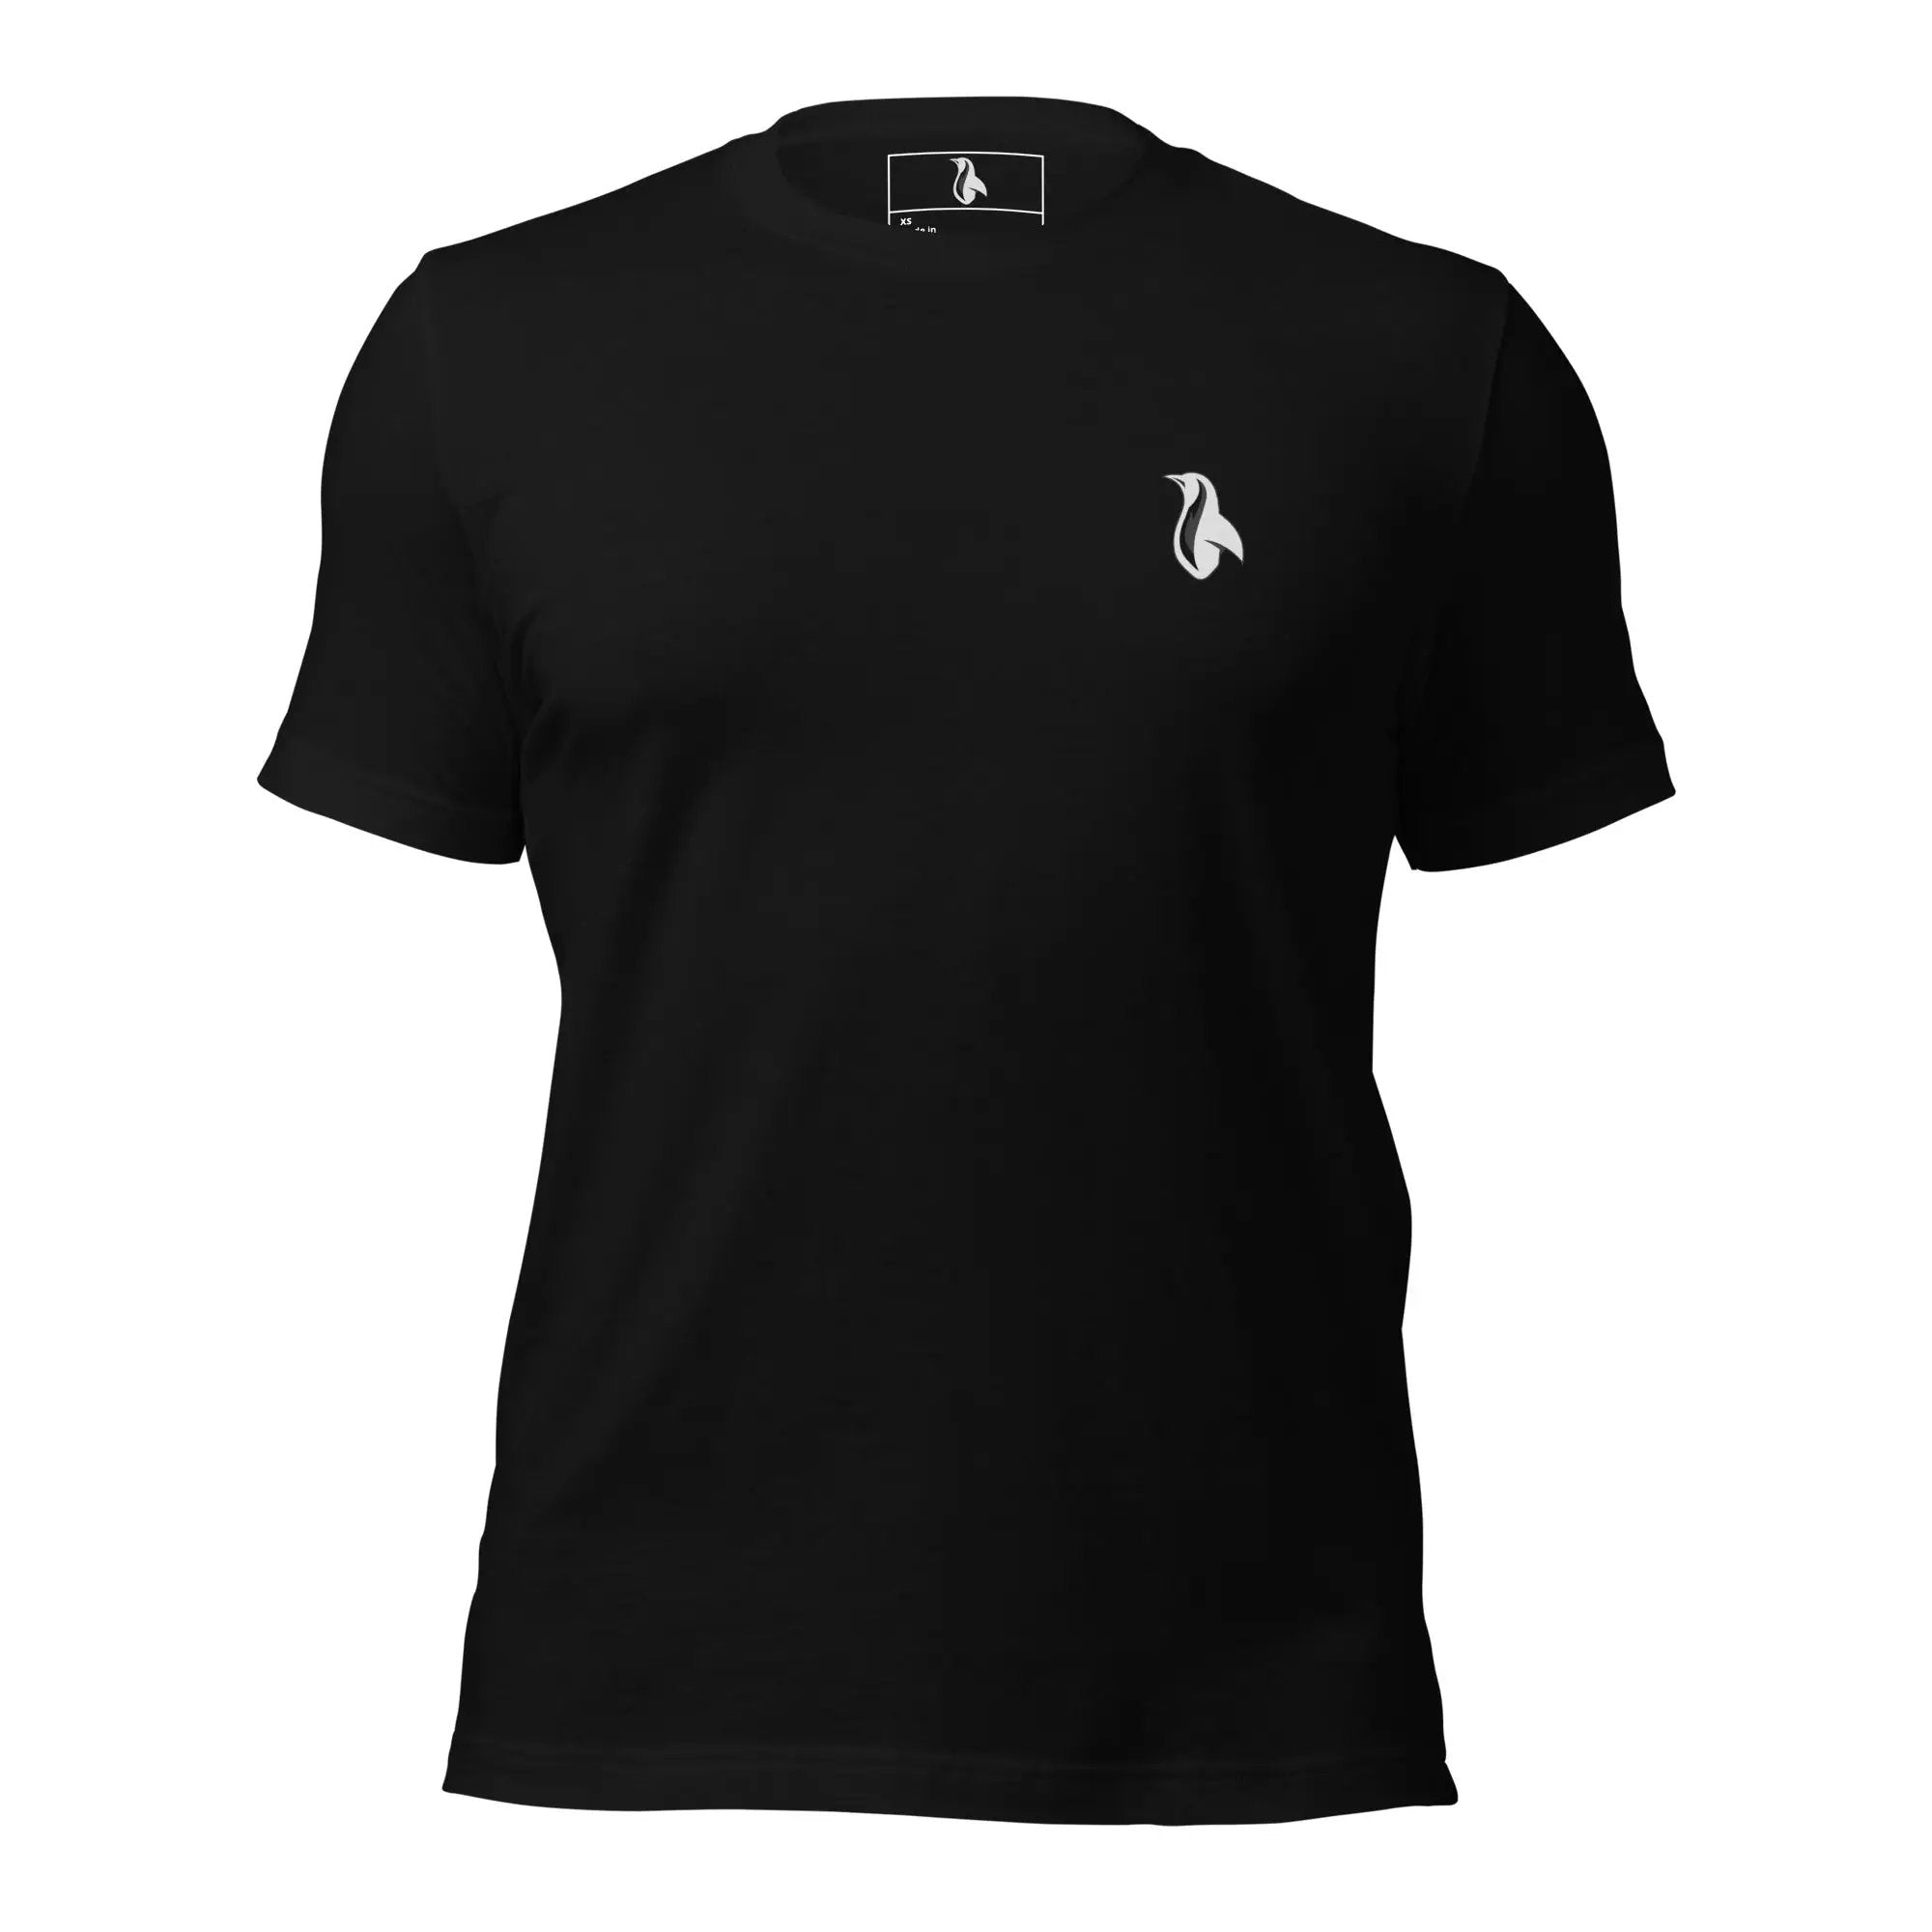 Airplane! Unisex t-shirt (BACK)